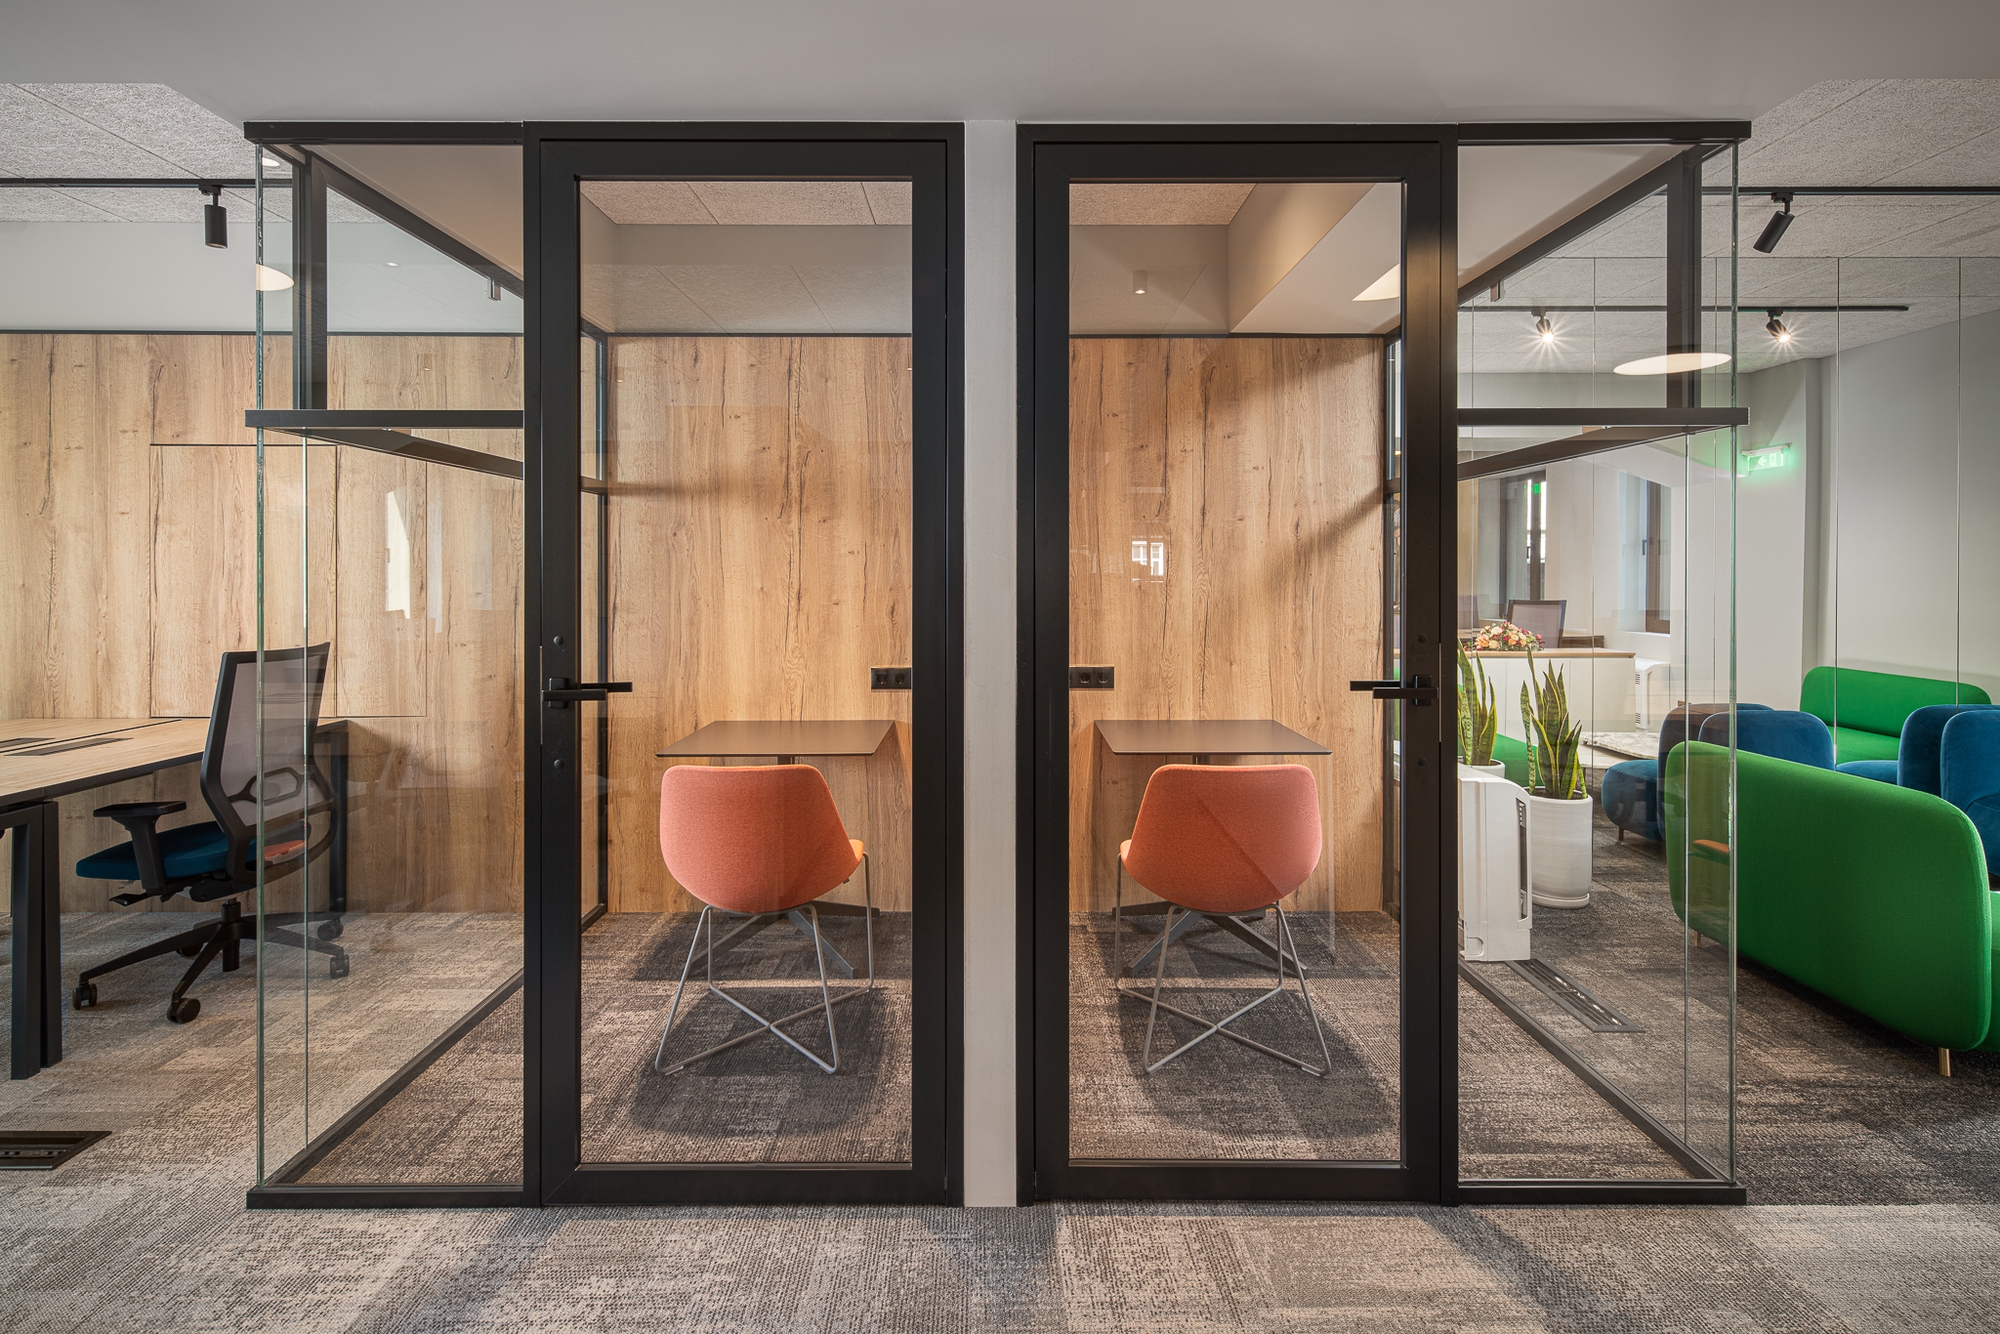 图片[8]|入口127协同办公办公室-索菲亚|ART-Arrakis | 建筑室内设计的创新与灵感